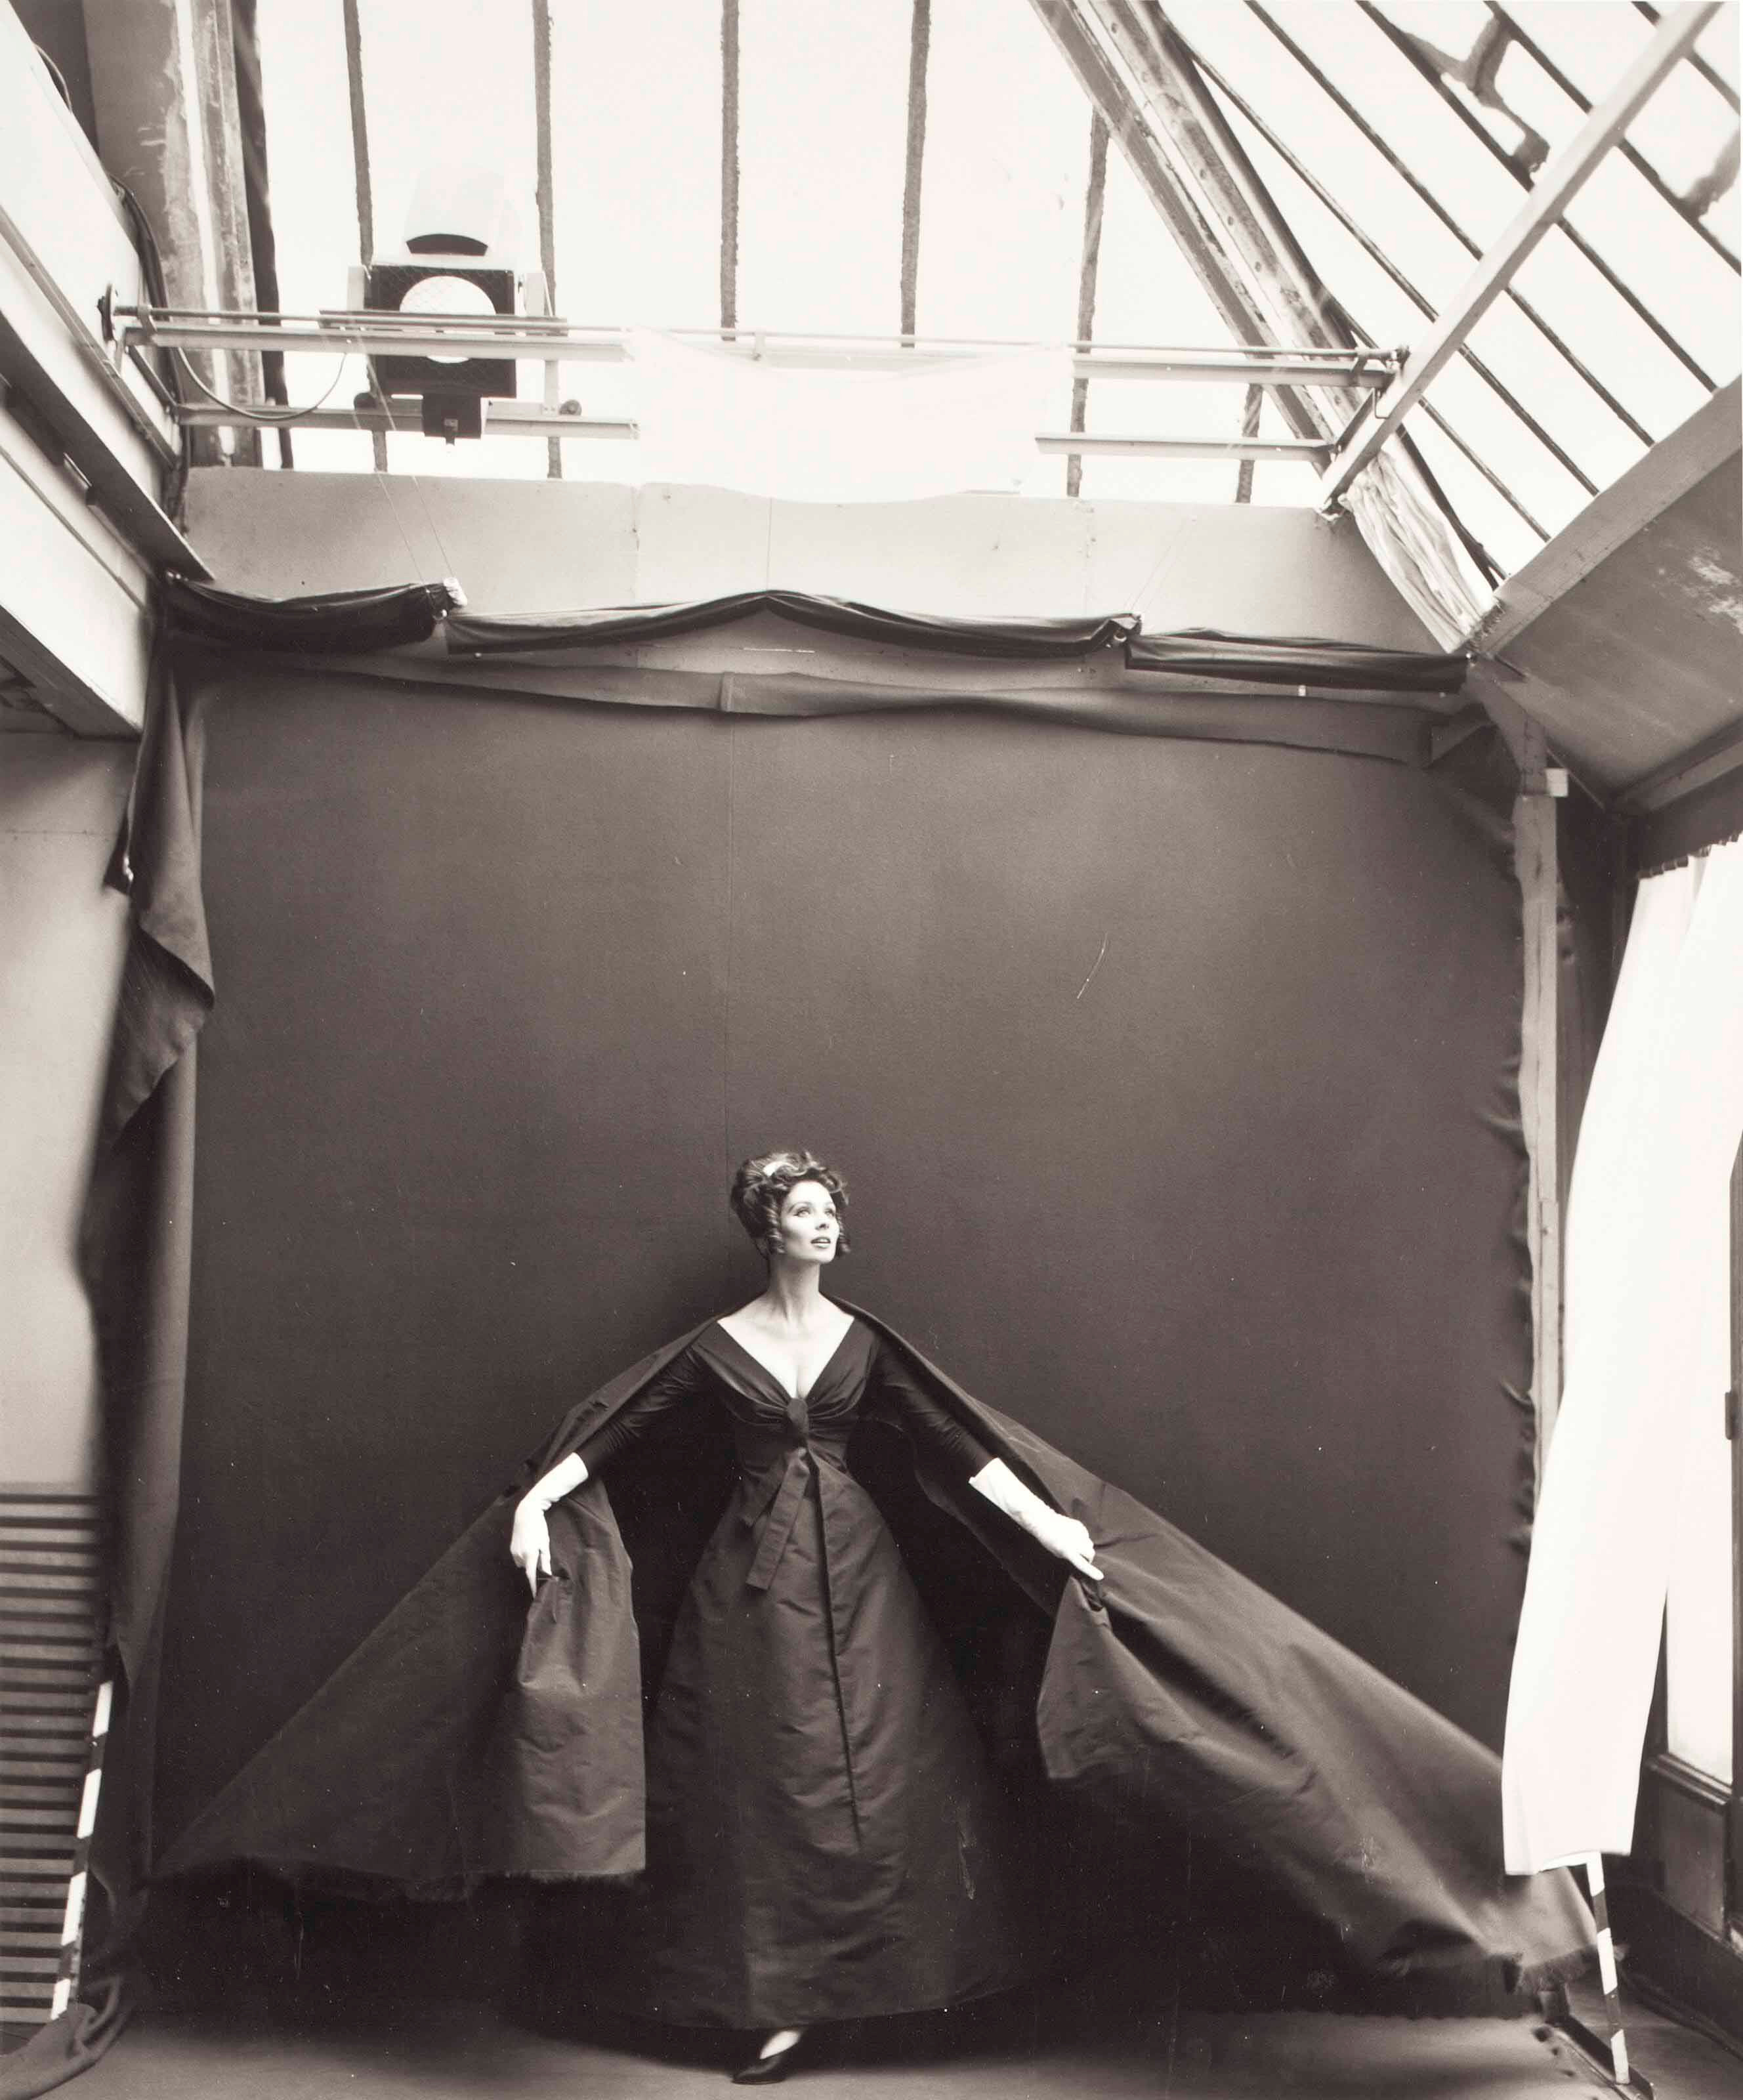 Сьюзи Паркер, вечернее платье Dior, парижская студия, август 1956 г.  Фотограф Ричард Аведон